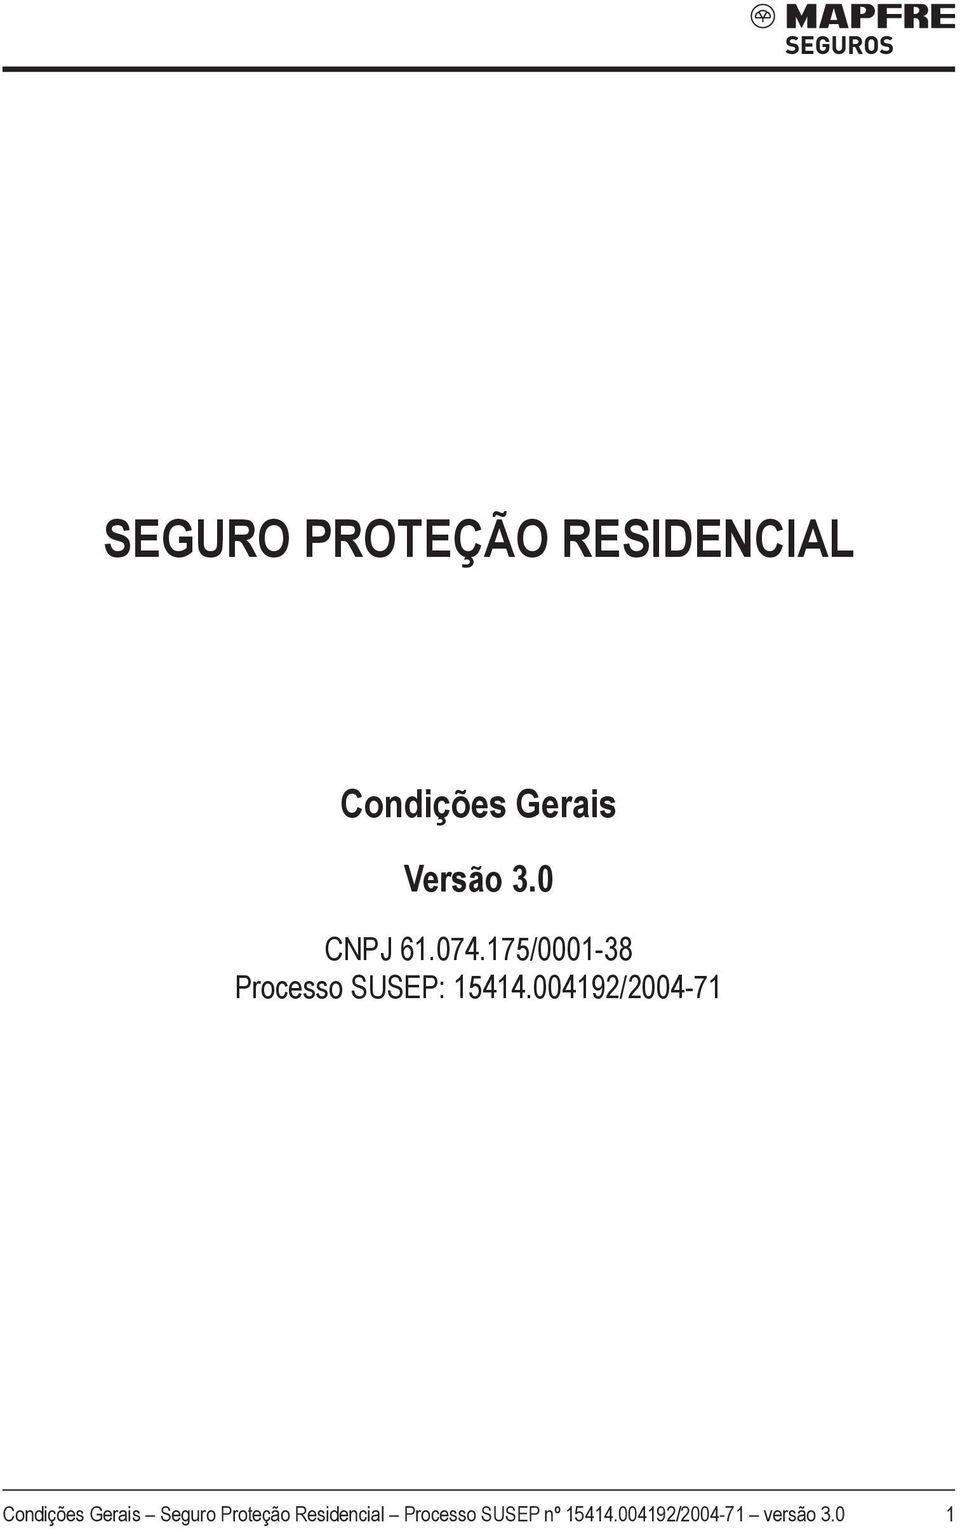 004192/2004-71 Condições Gerais Seguro Proteção